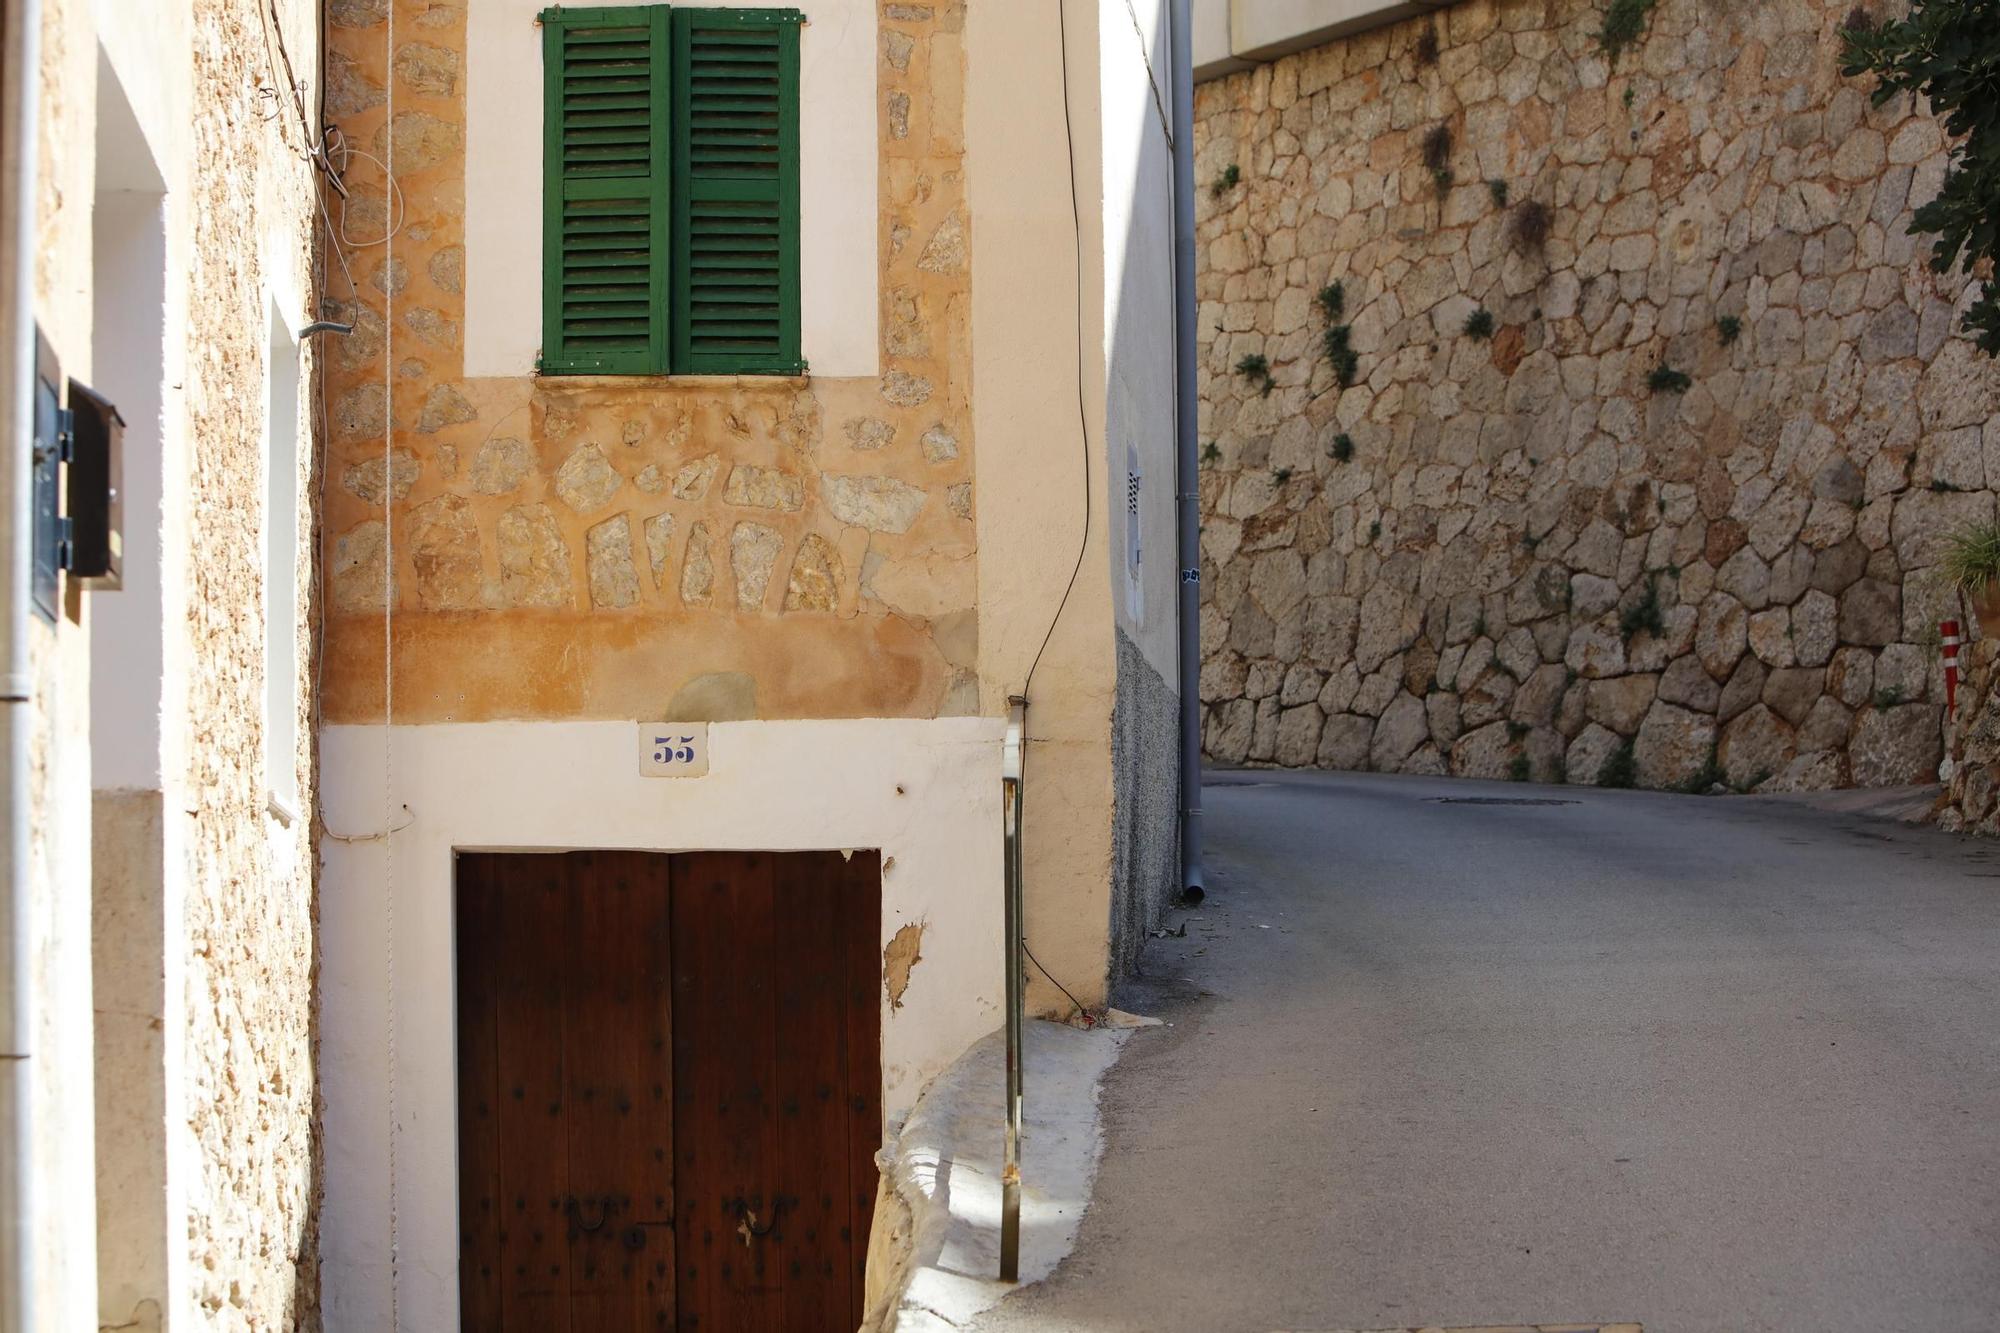 Urlaub auf Mallorca: In welchem traumhaften Dorf befinden wir uns hier?